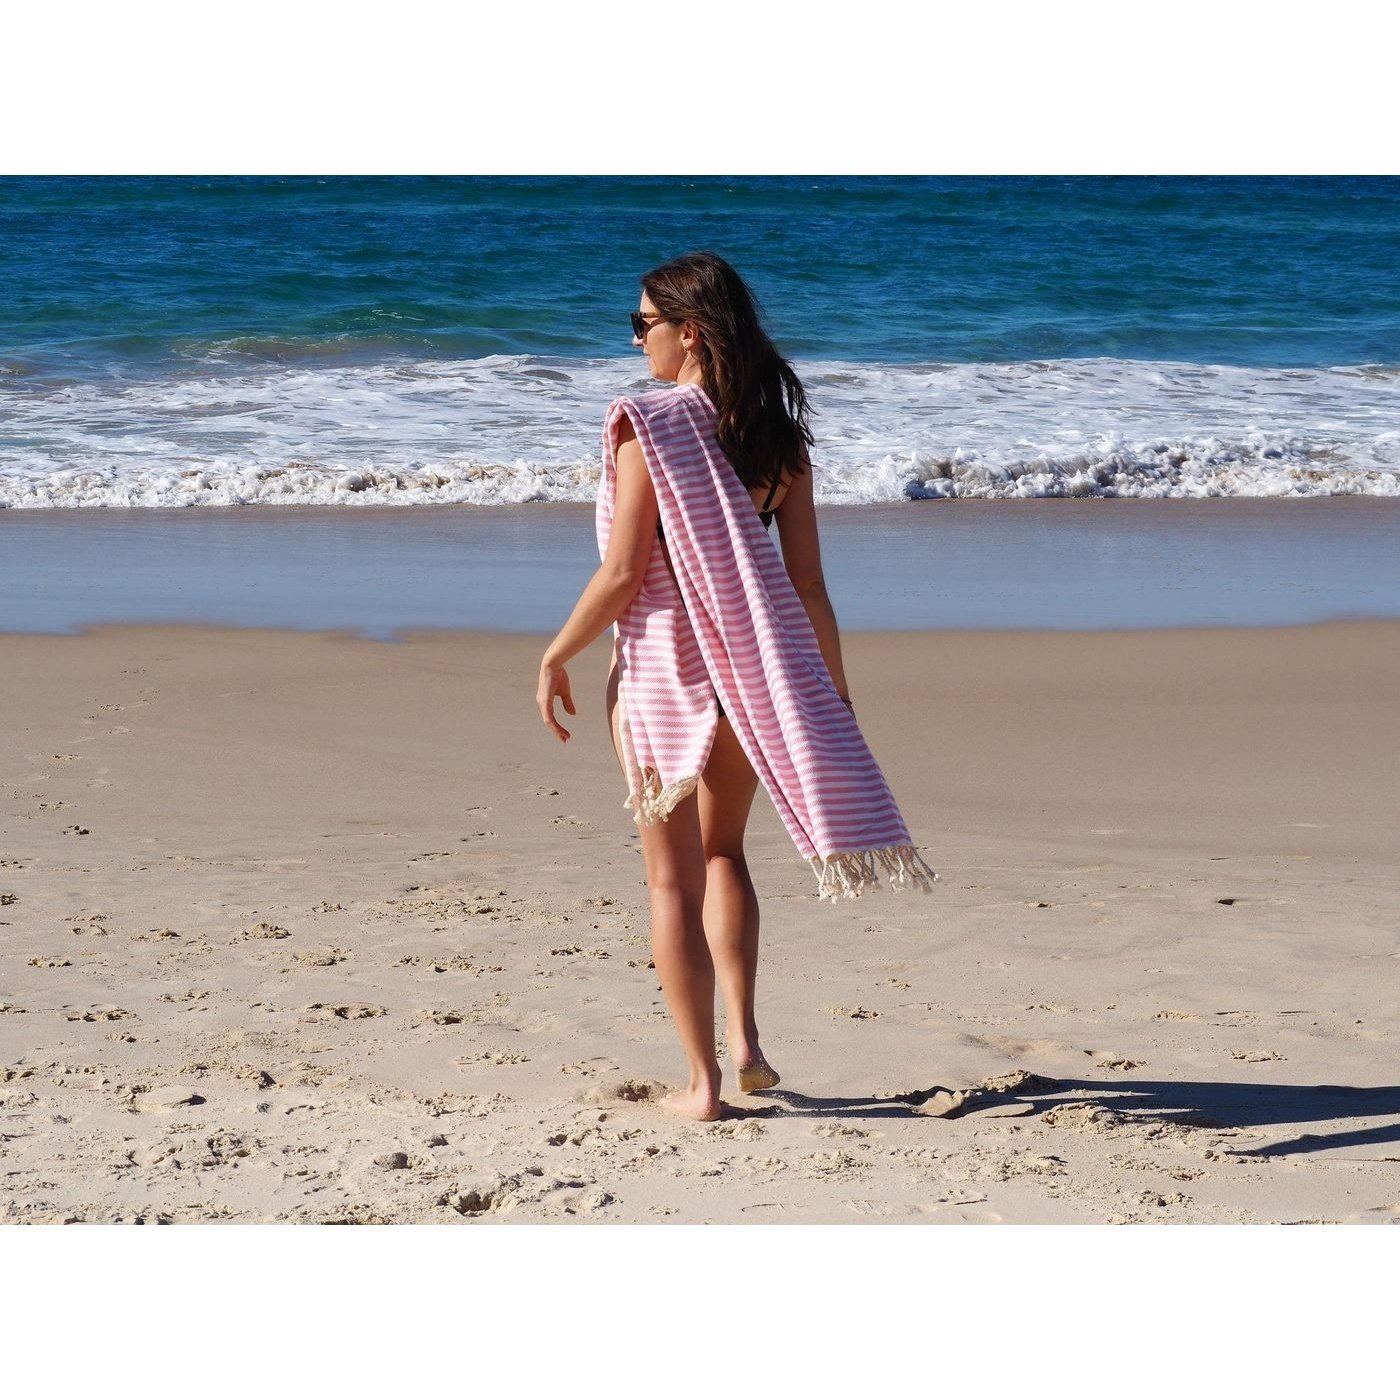 Beach Towel Portsea Deluxe Turkish Cotton - Blush